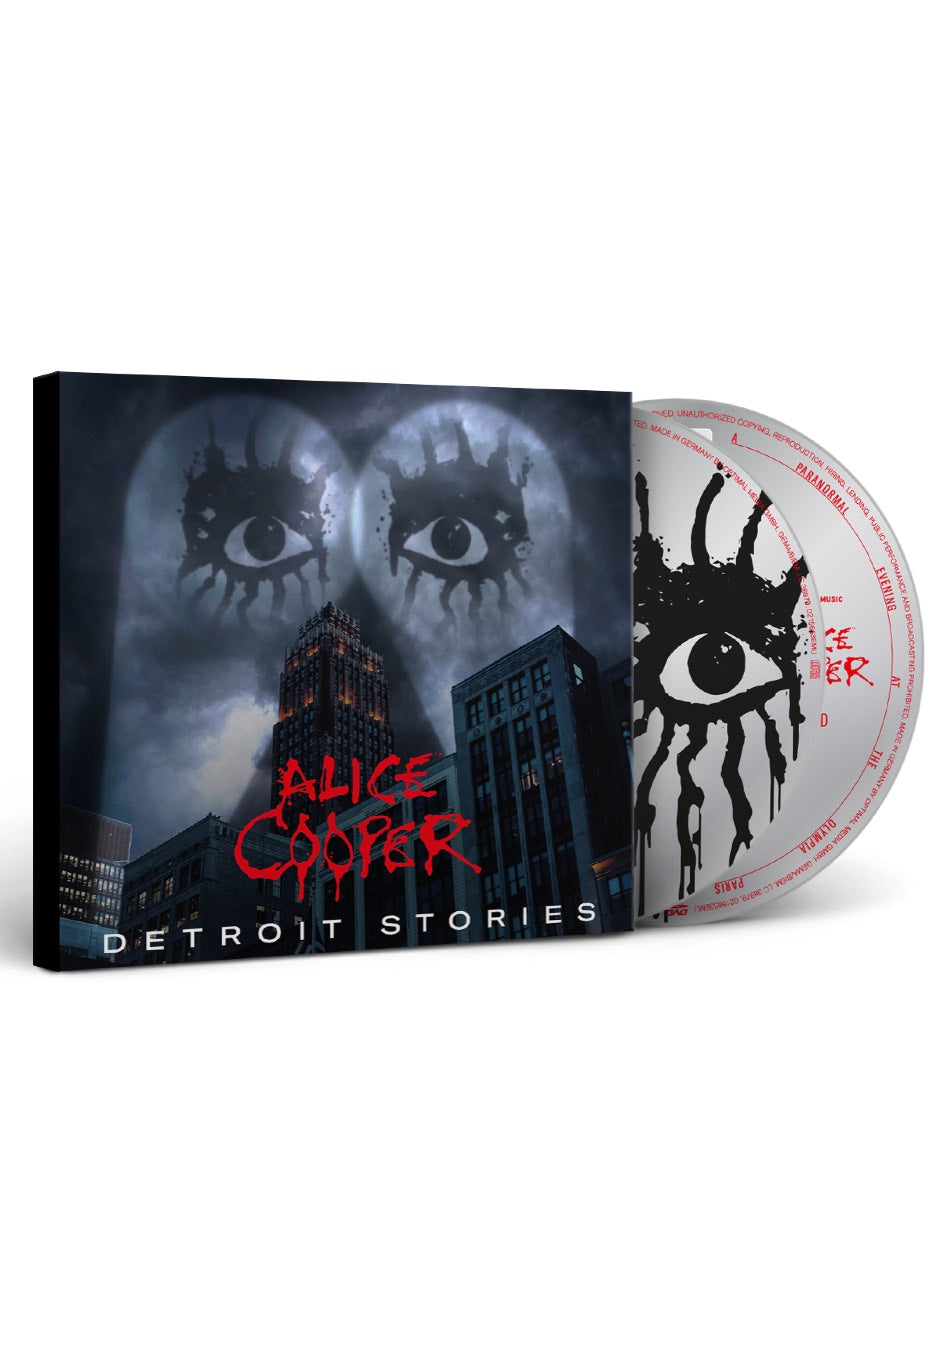 Alice Cooper - Detroit Stories Ltd. - Digipak CD + DVD